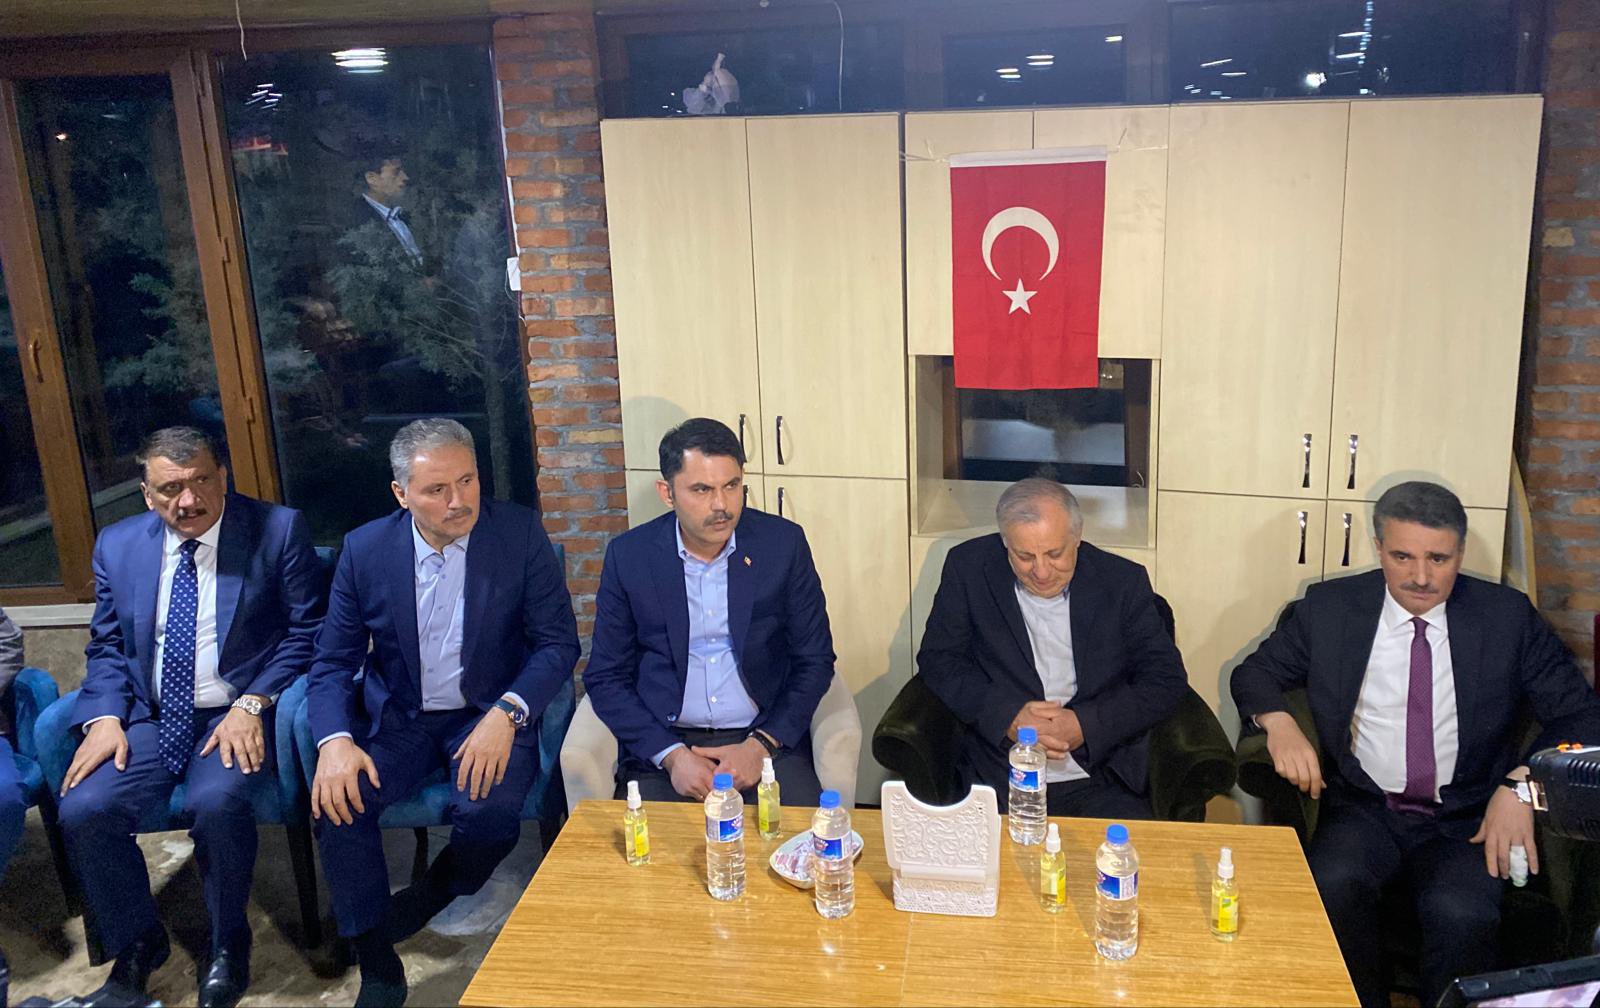 Çevre, Şehircilik ve İklim Değişikliği Bakanı Murat Kurum, Suriye'de şehit olan Özel Harekat Polisimiz Aytaç Altunörs'ün Malatya'daki ailesine taziye ziyaretinde bulundu.